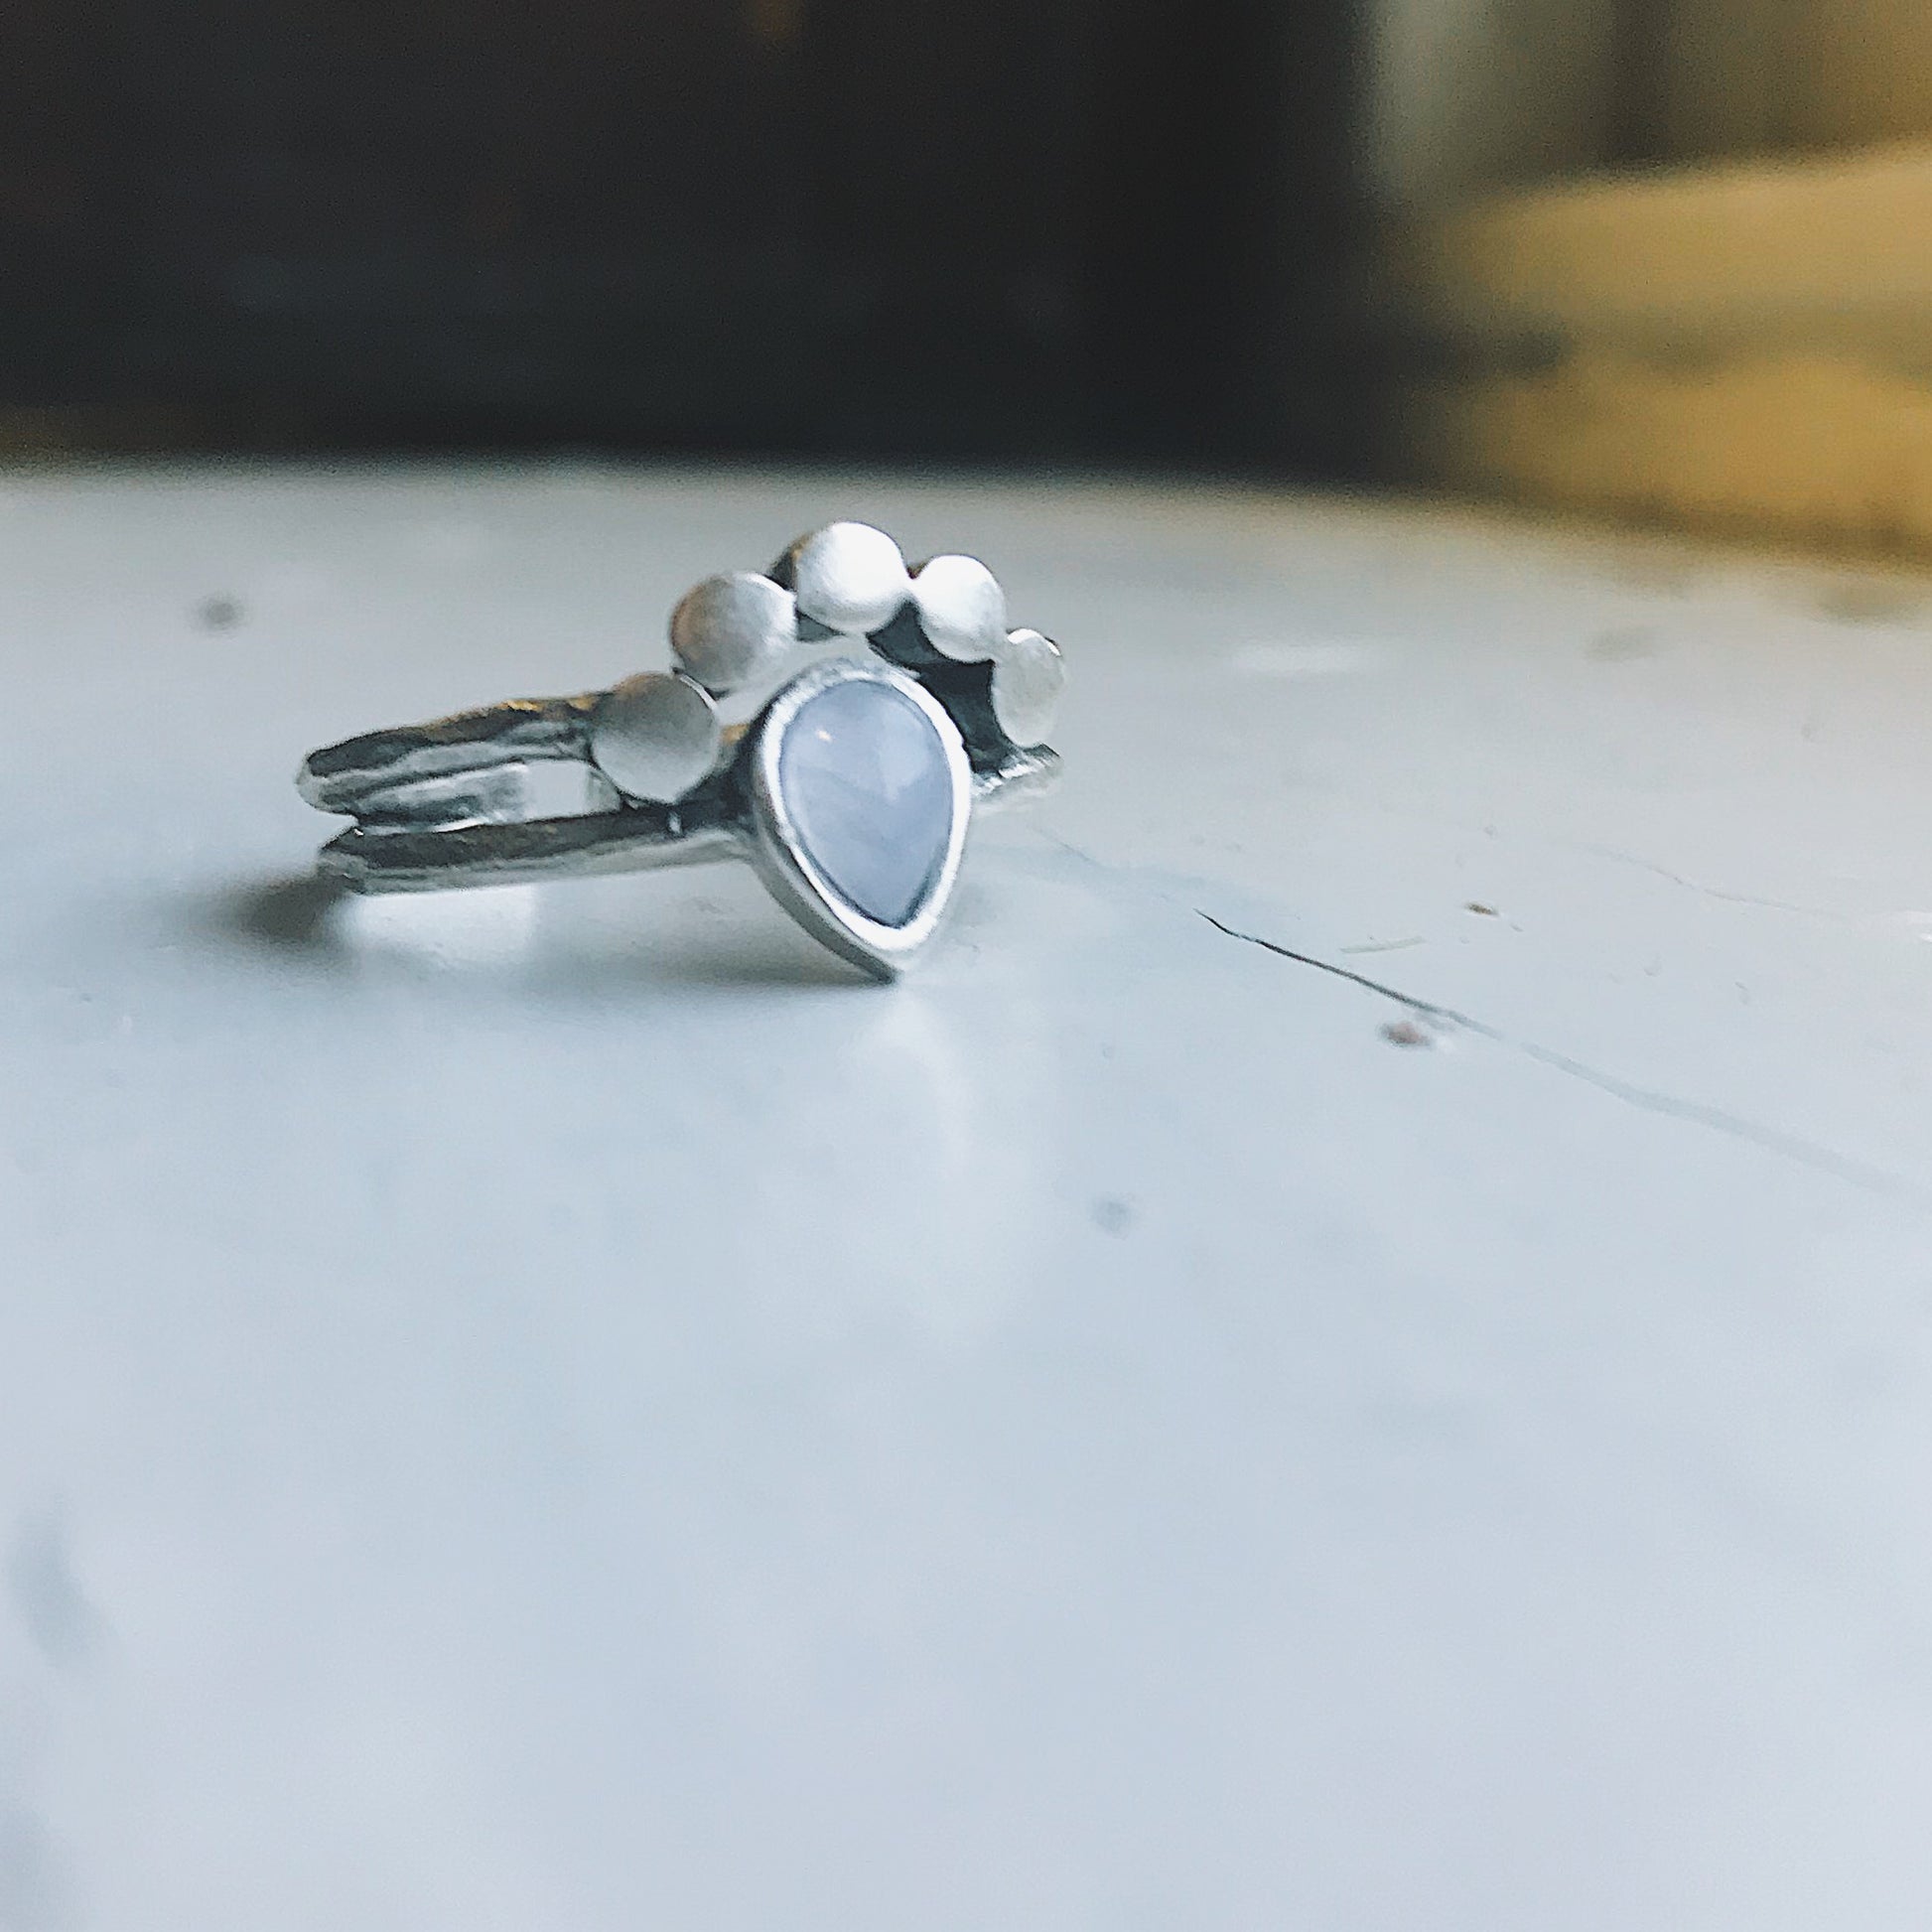 Moondrop Moonstone Ring Ring Yugen Handmade Silver Tone  